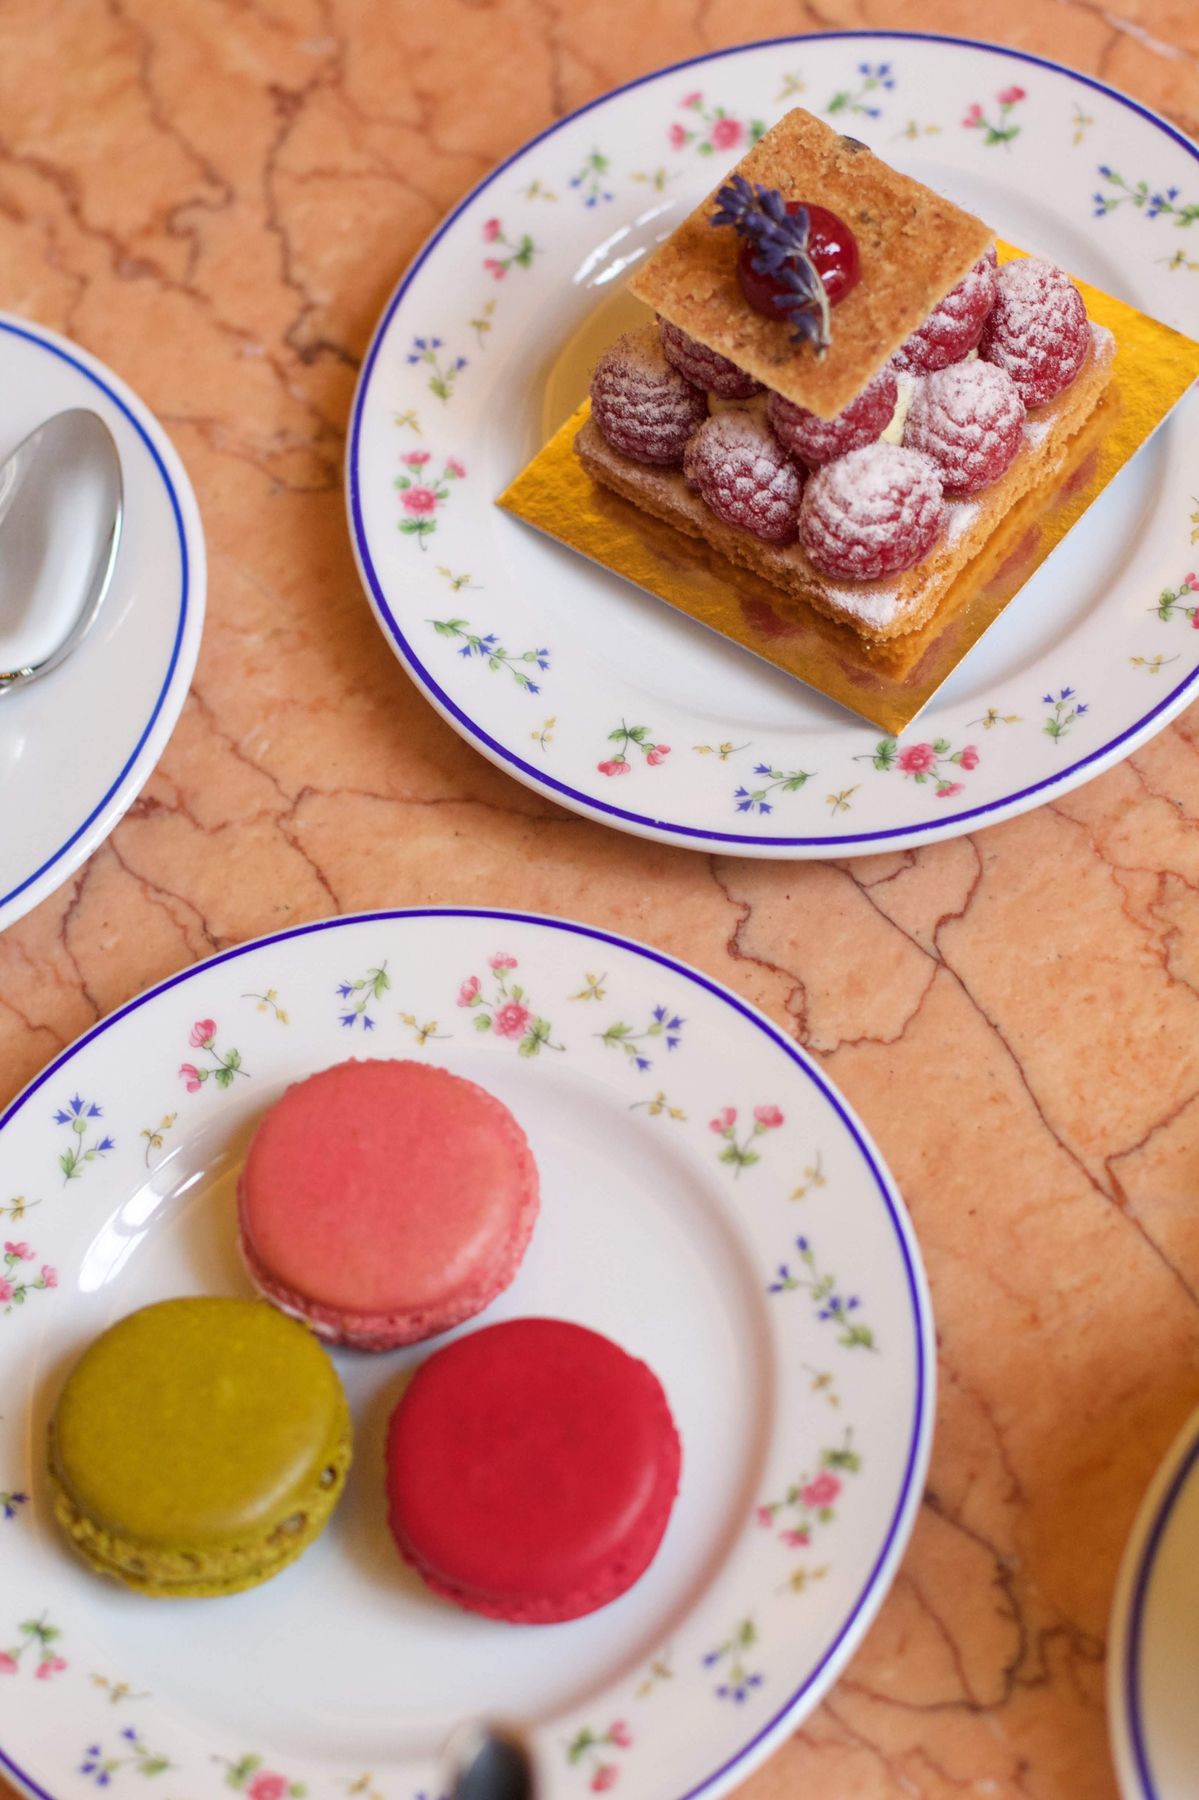 Best Macarons in Paris: Carette, Paris